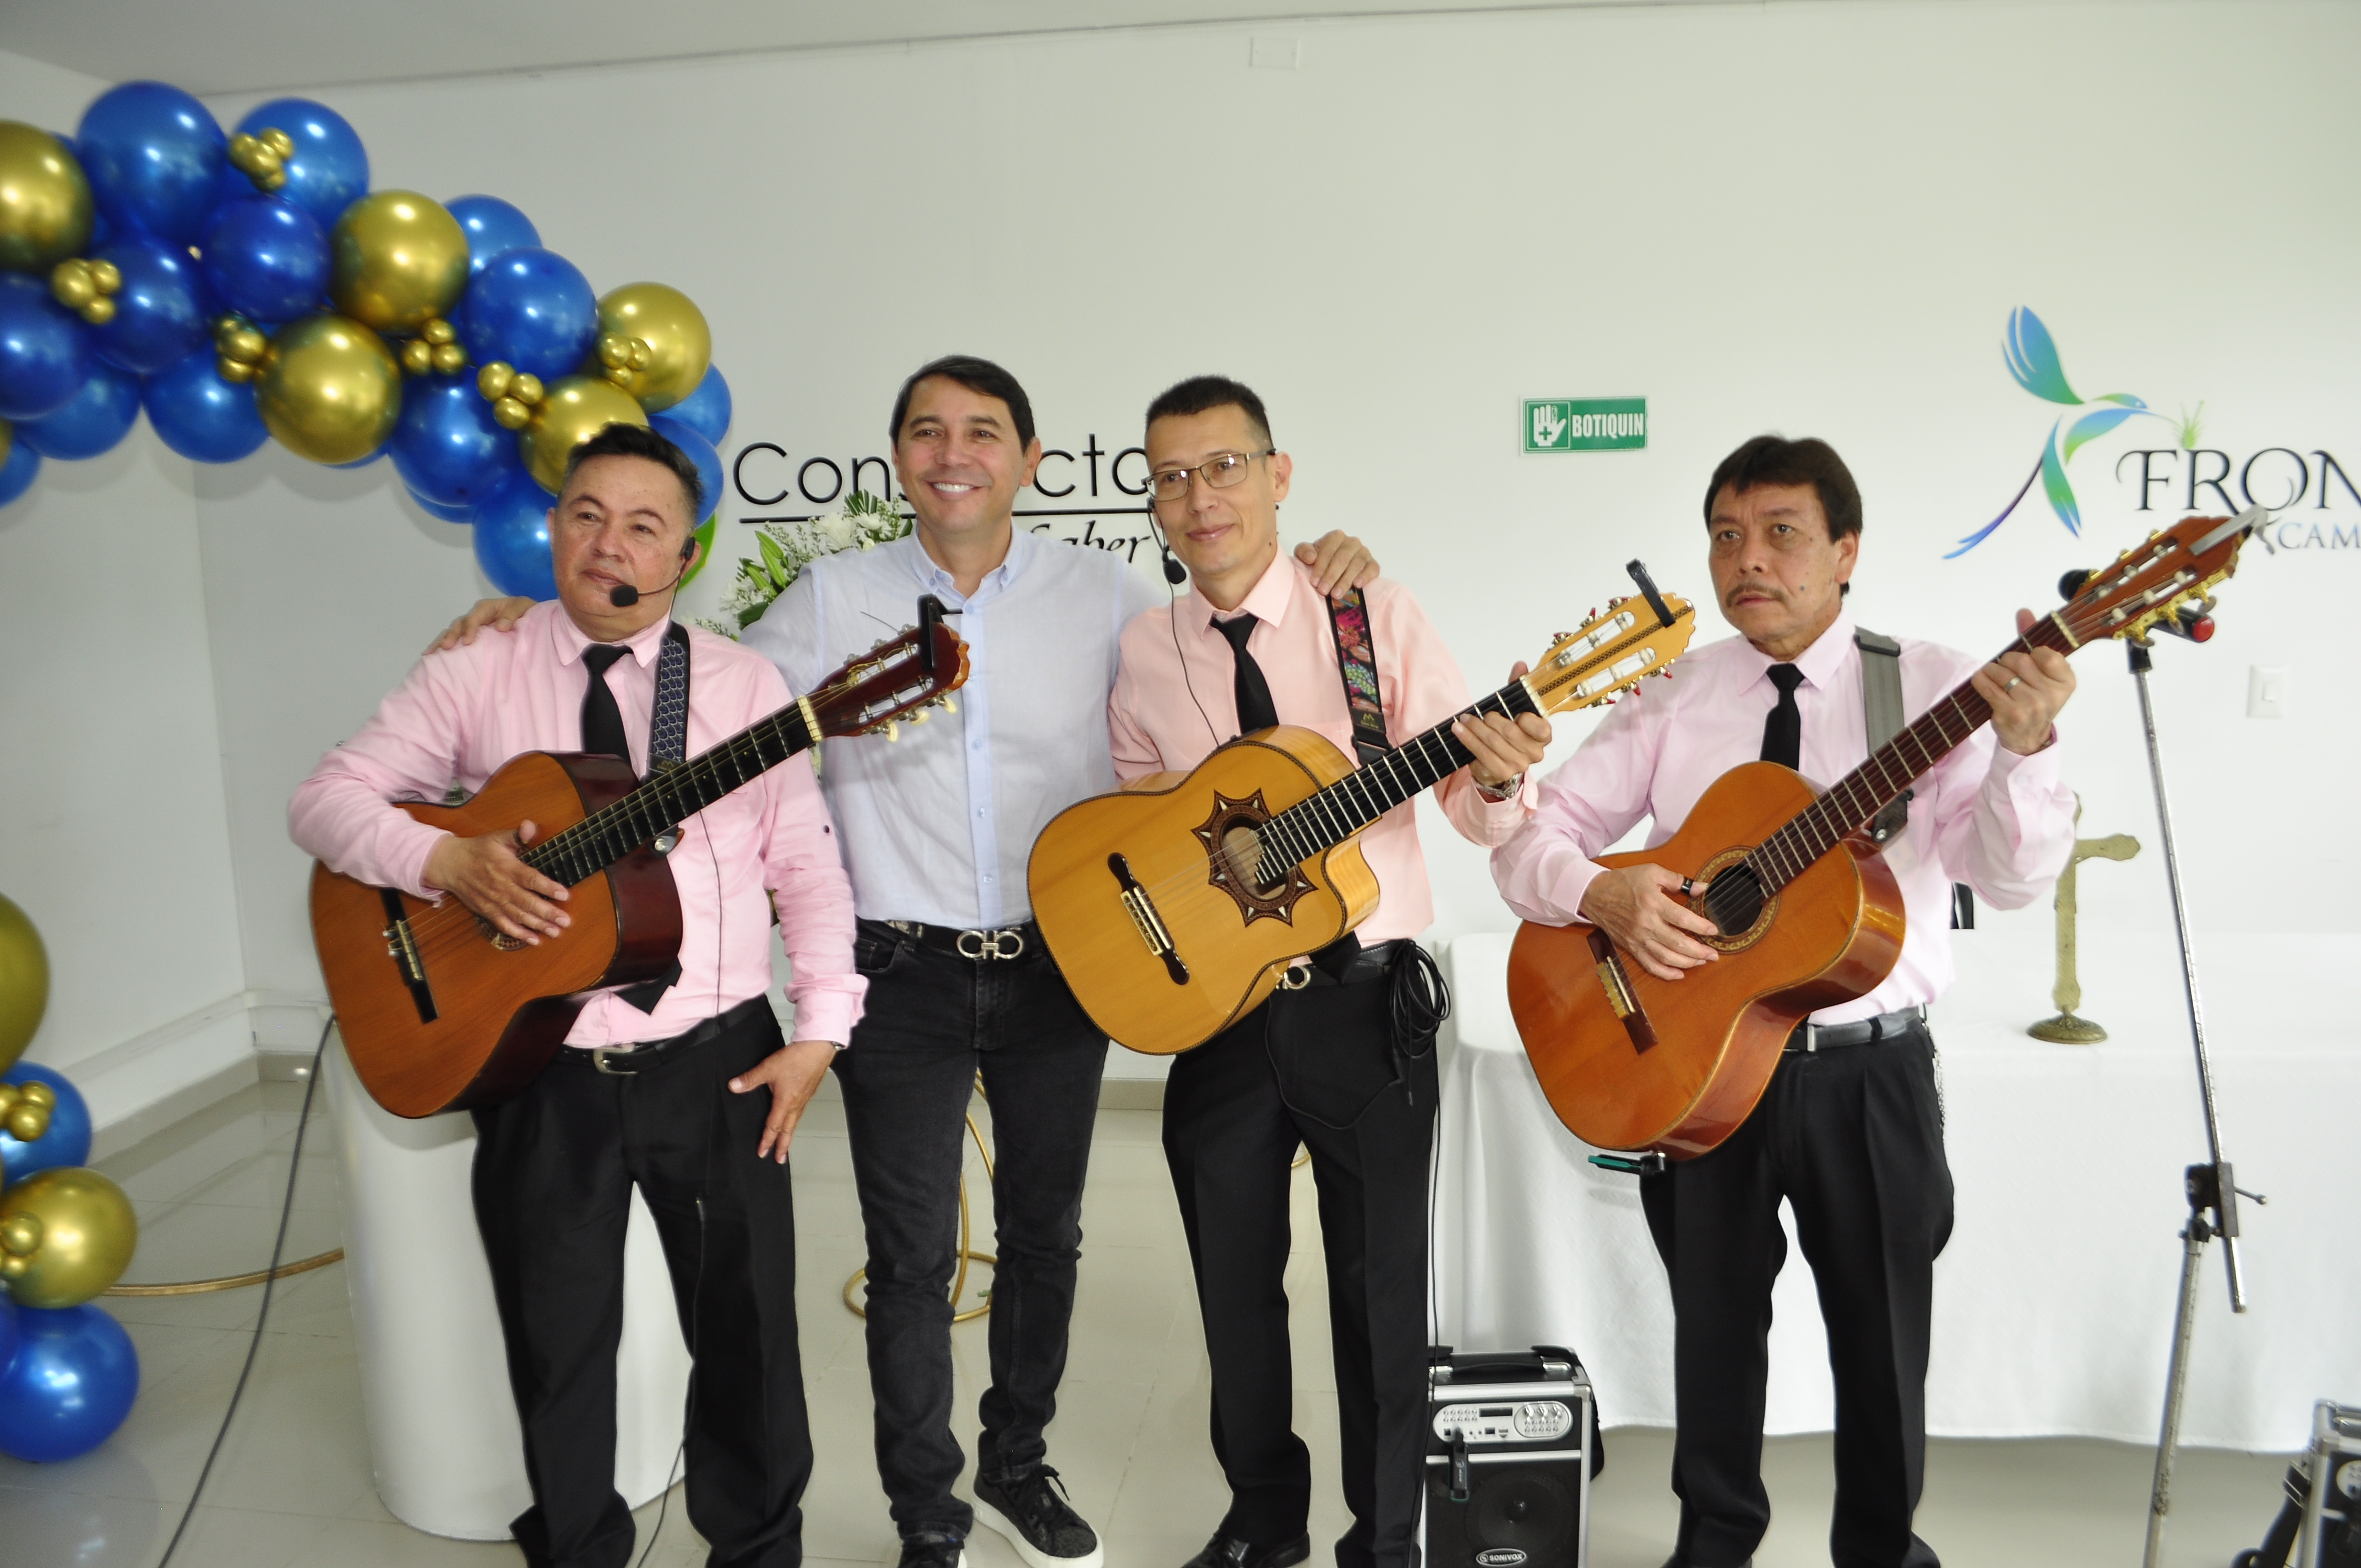 El grupo ibaguereño Serenata Musical, armonizó la reunión al compás de los ritmos tradicionales colombianos. En la imagen, el alcalde Andrés Fabián Hurtado, junto a los integrantes de la agrupación.  